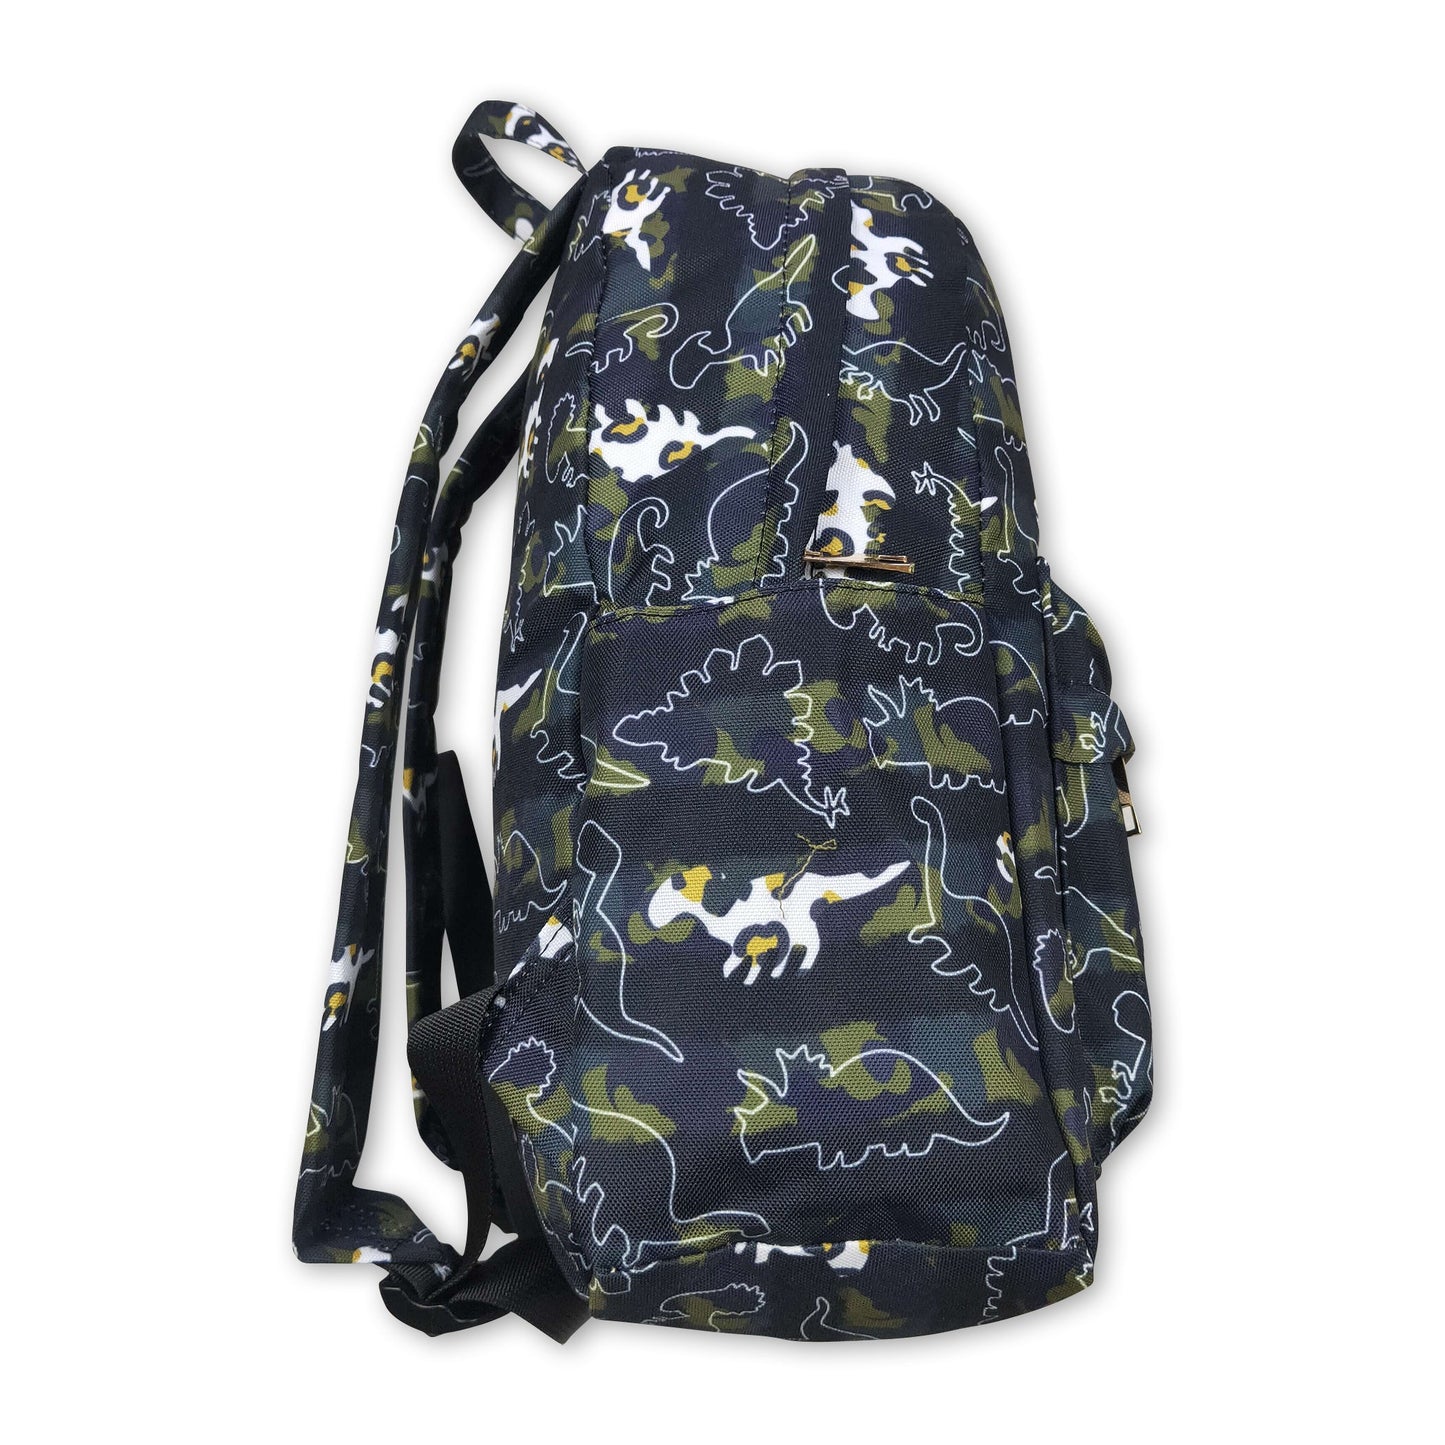 Olive camo leopard dinosaur kids boy backpack